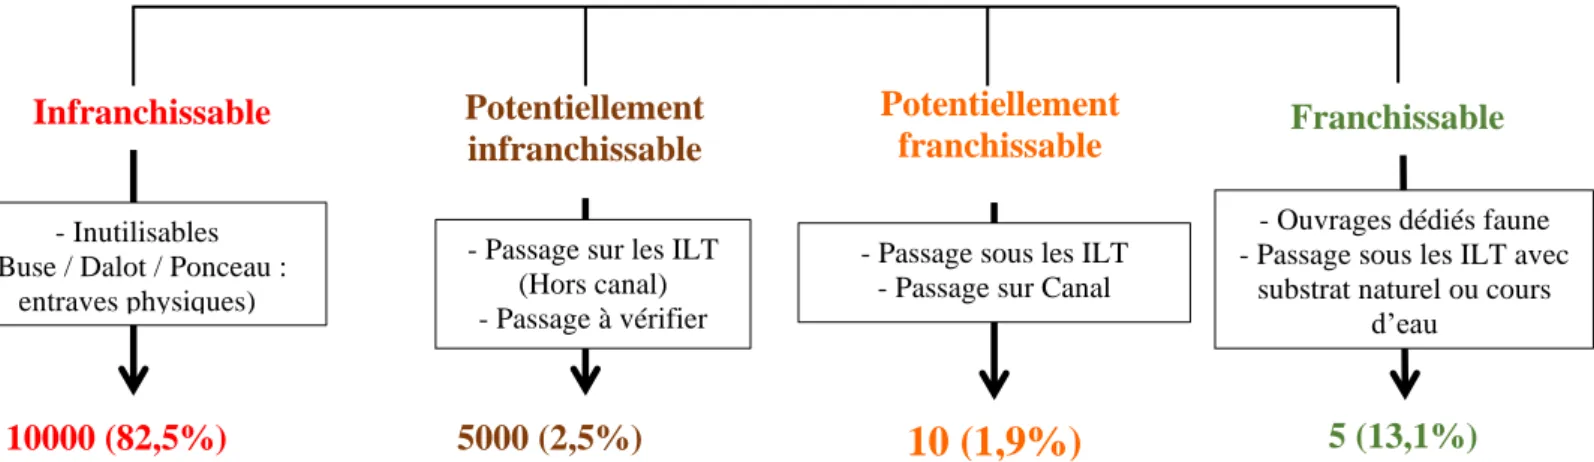 Figure 8: Schéma de classification de la franchissabilité théorique en fonction du type d'ouvrage pour 